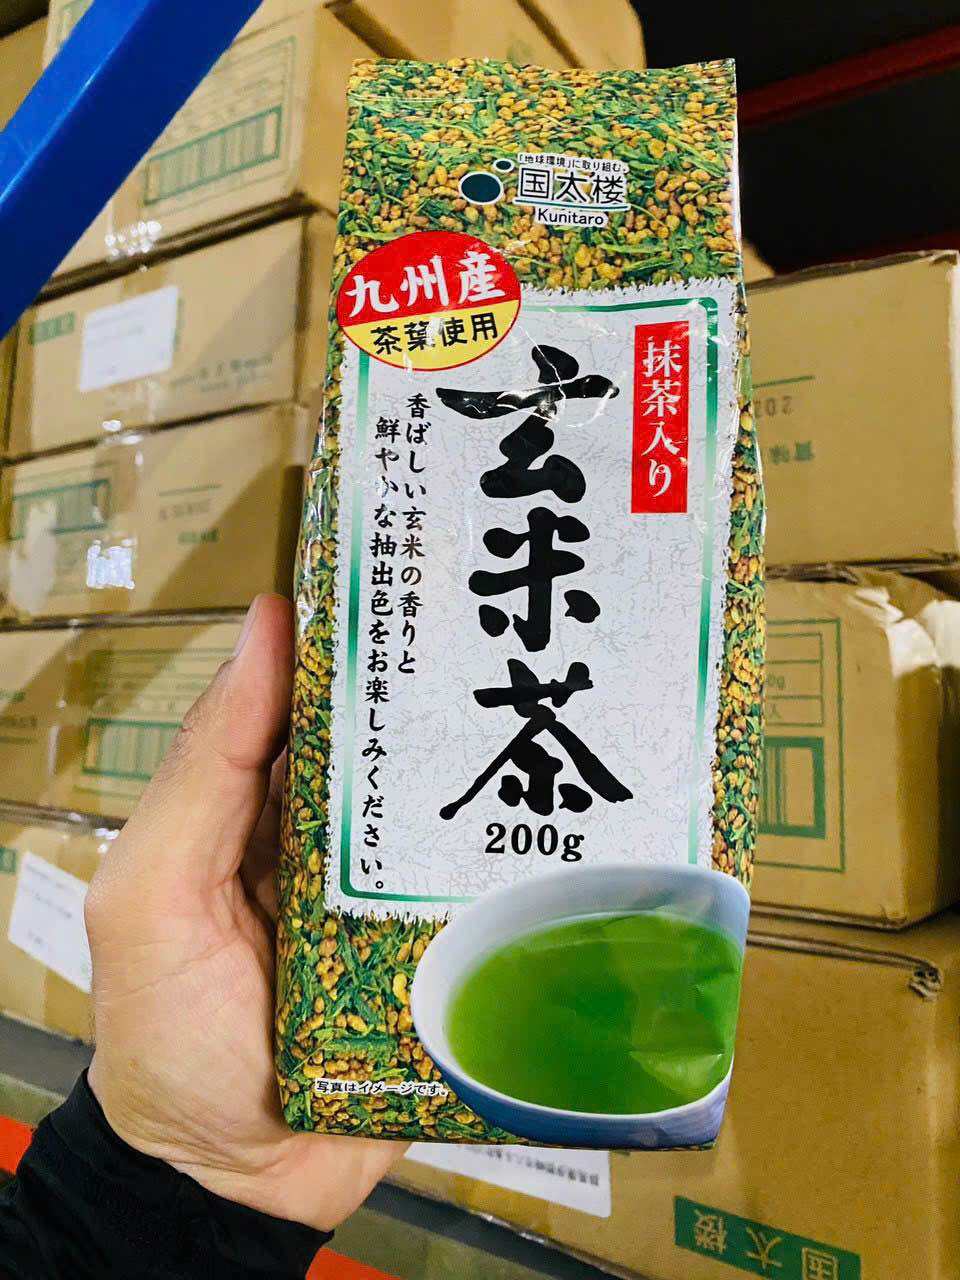 Trà xanh gạo lức Nhật Bản KUNITARO BROWN RICE TEA 200g - Hàng nội địa Nhật